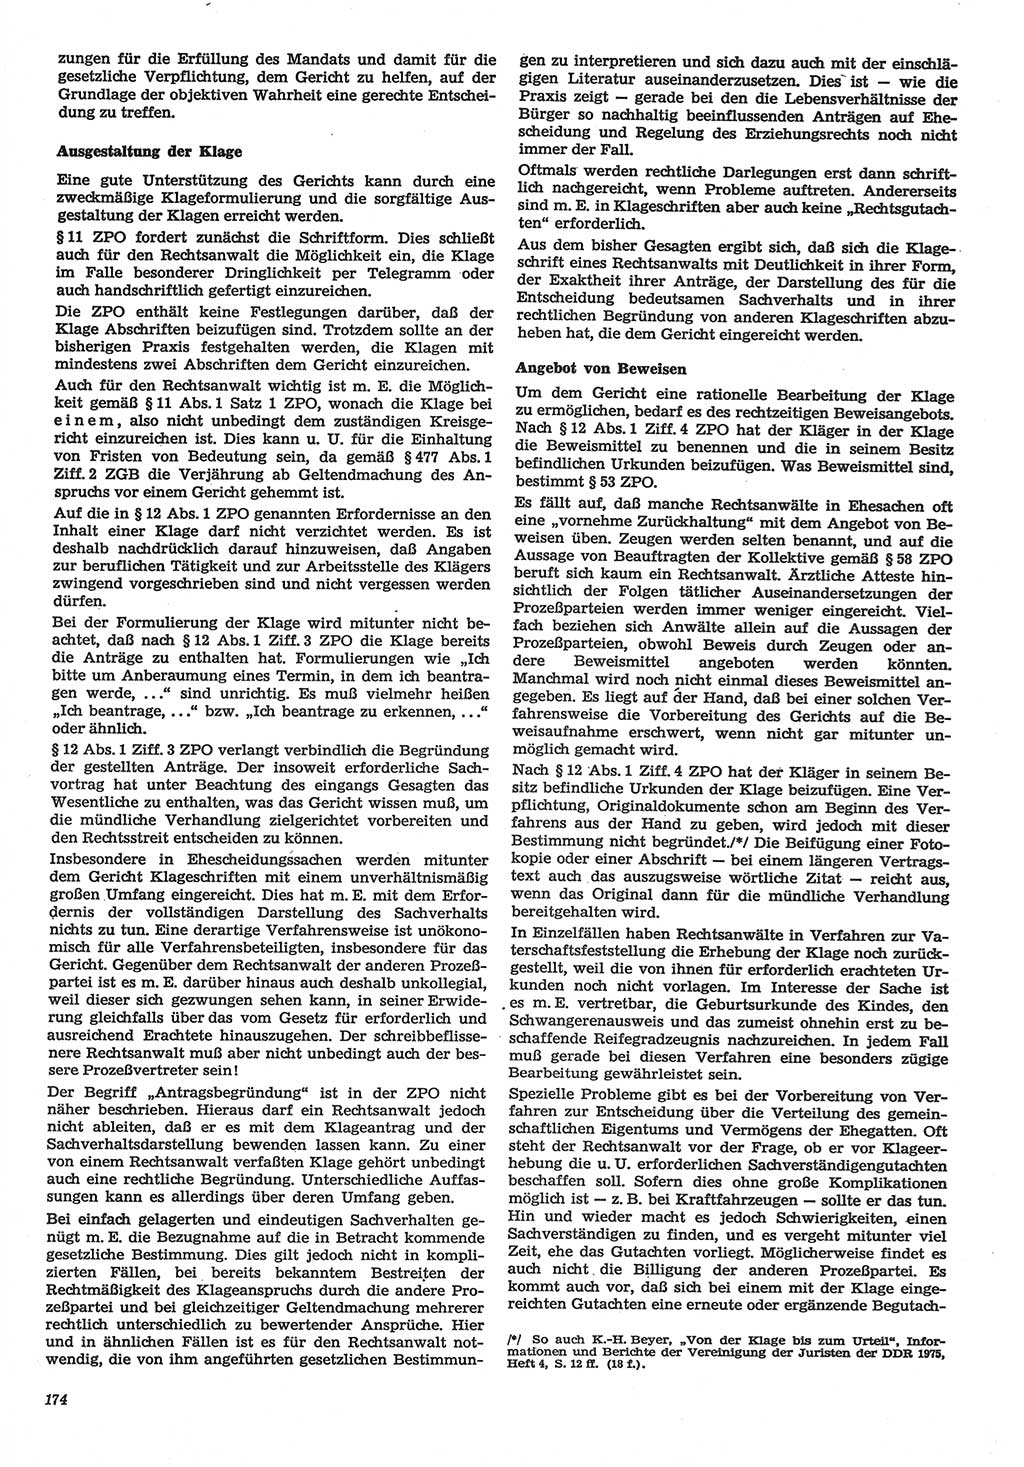 Neue Justiz (NJ), Zeitschrift für Recht und Rechtswissenschaft-Zeitschrift, sozialistisches Recht und Gesetzlichkeit, 31. Jahrgang 1977, Seite 174 (NJ DDR 1977, S. 174)